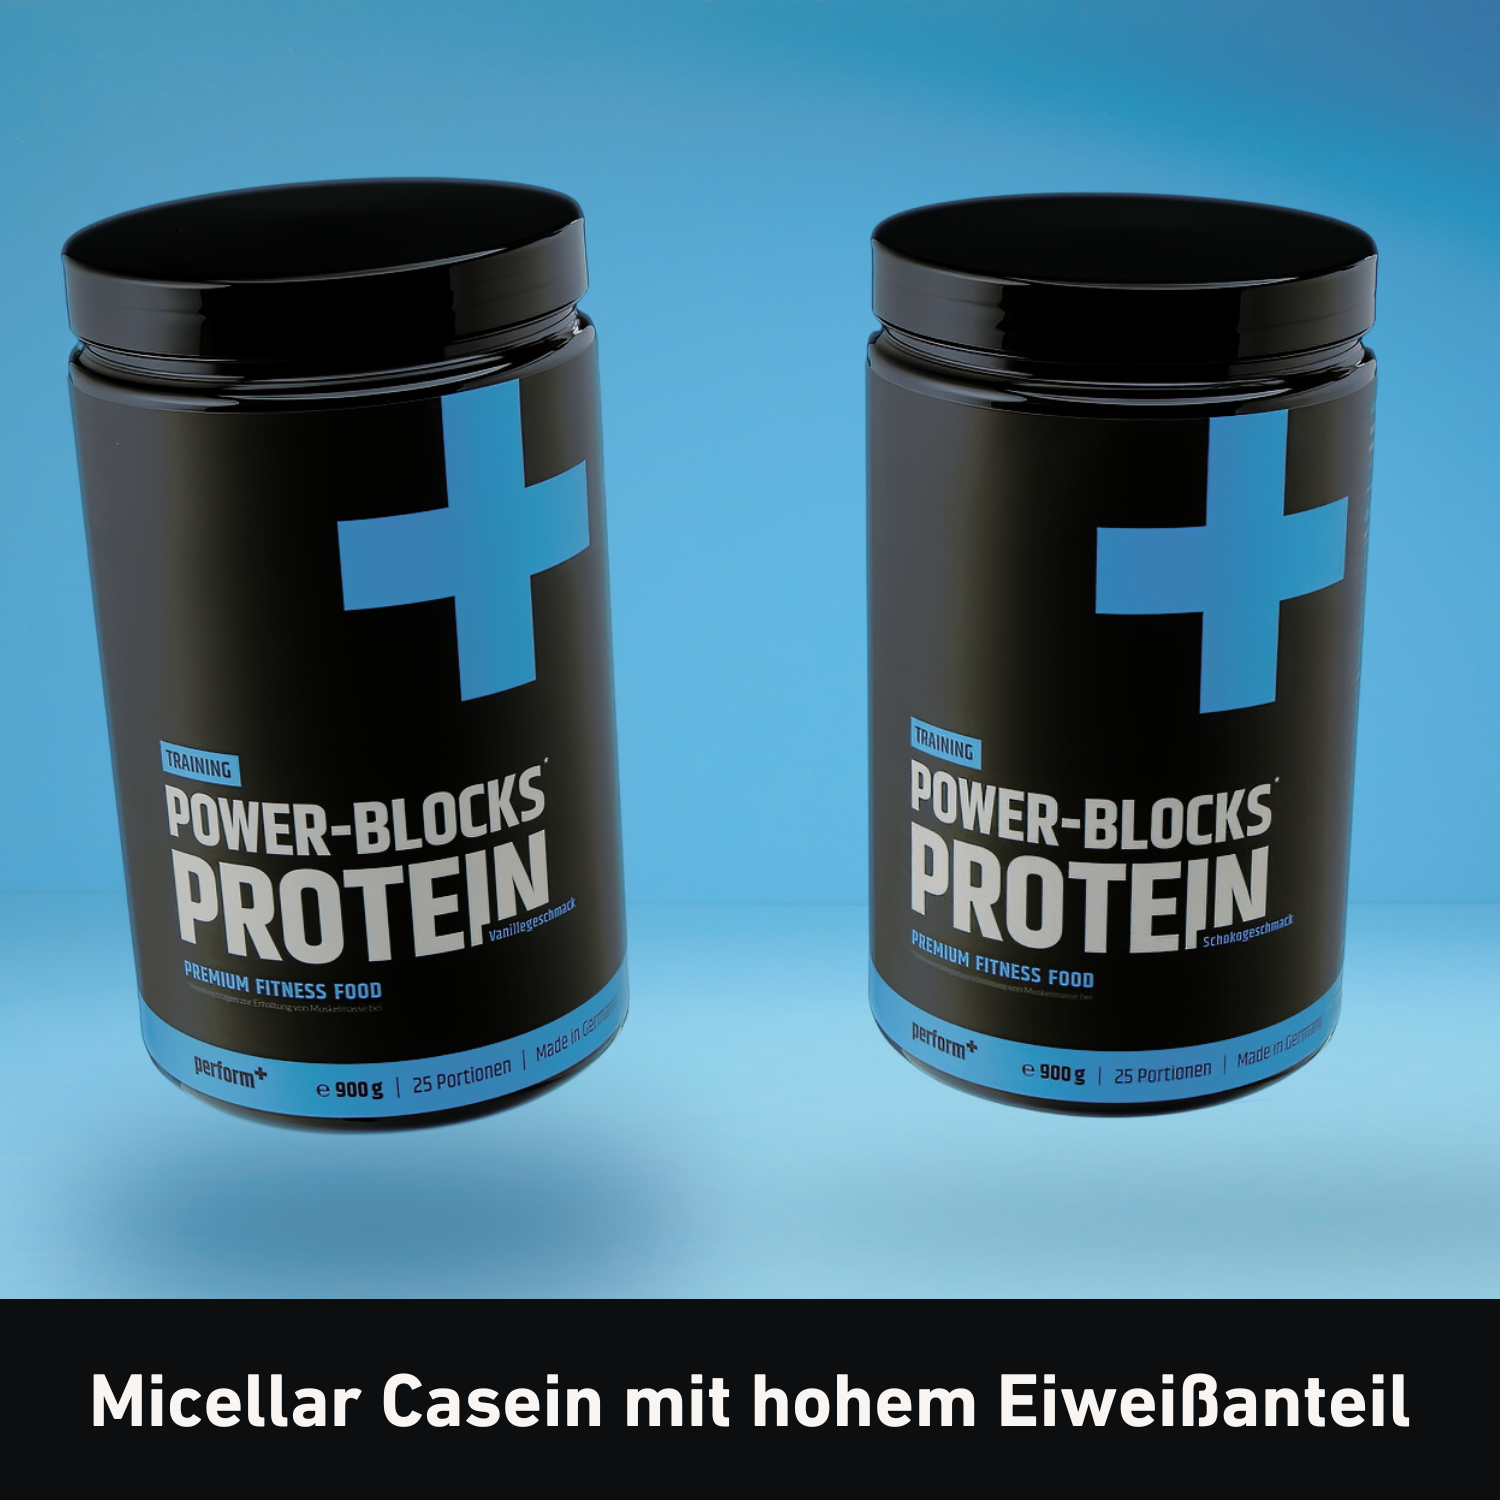 Power-Blocks Protein